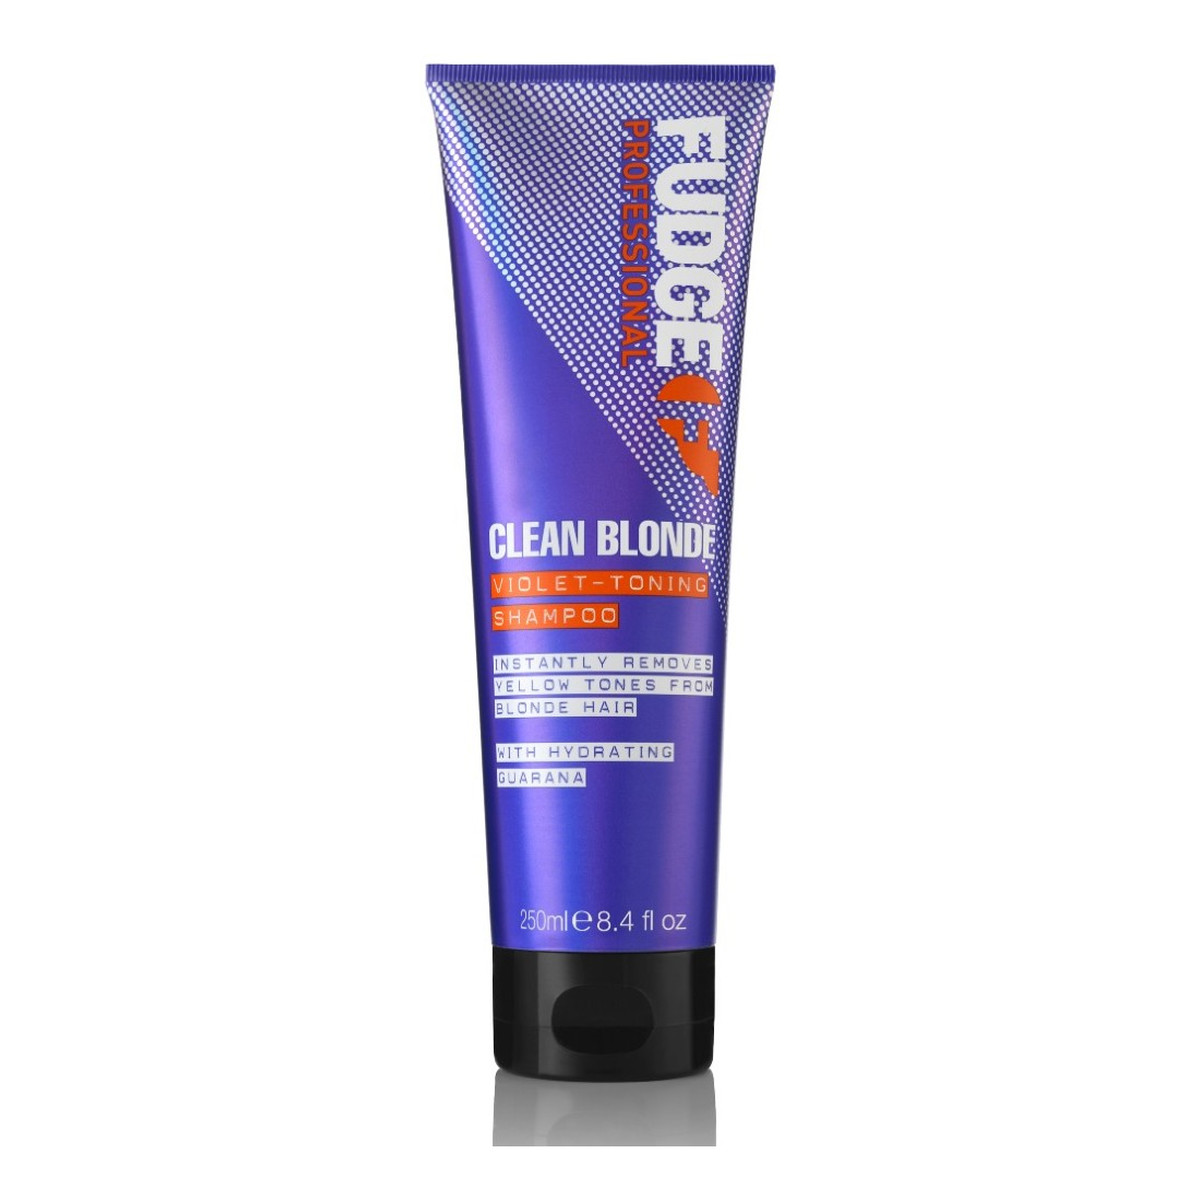 Fudge Clean blonde violet-toning shampoo tonujący szampon do włosów blond 250ml